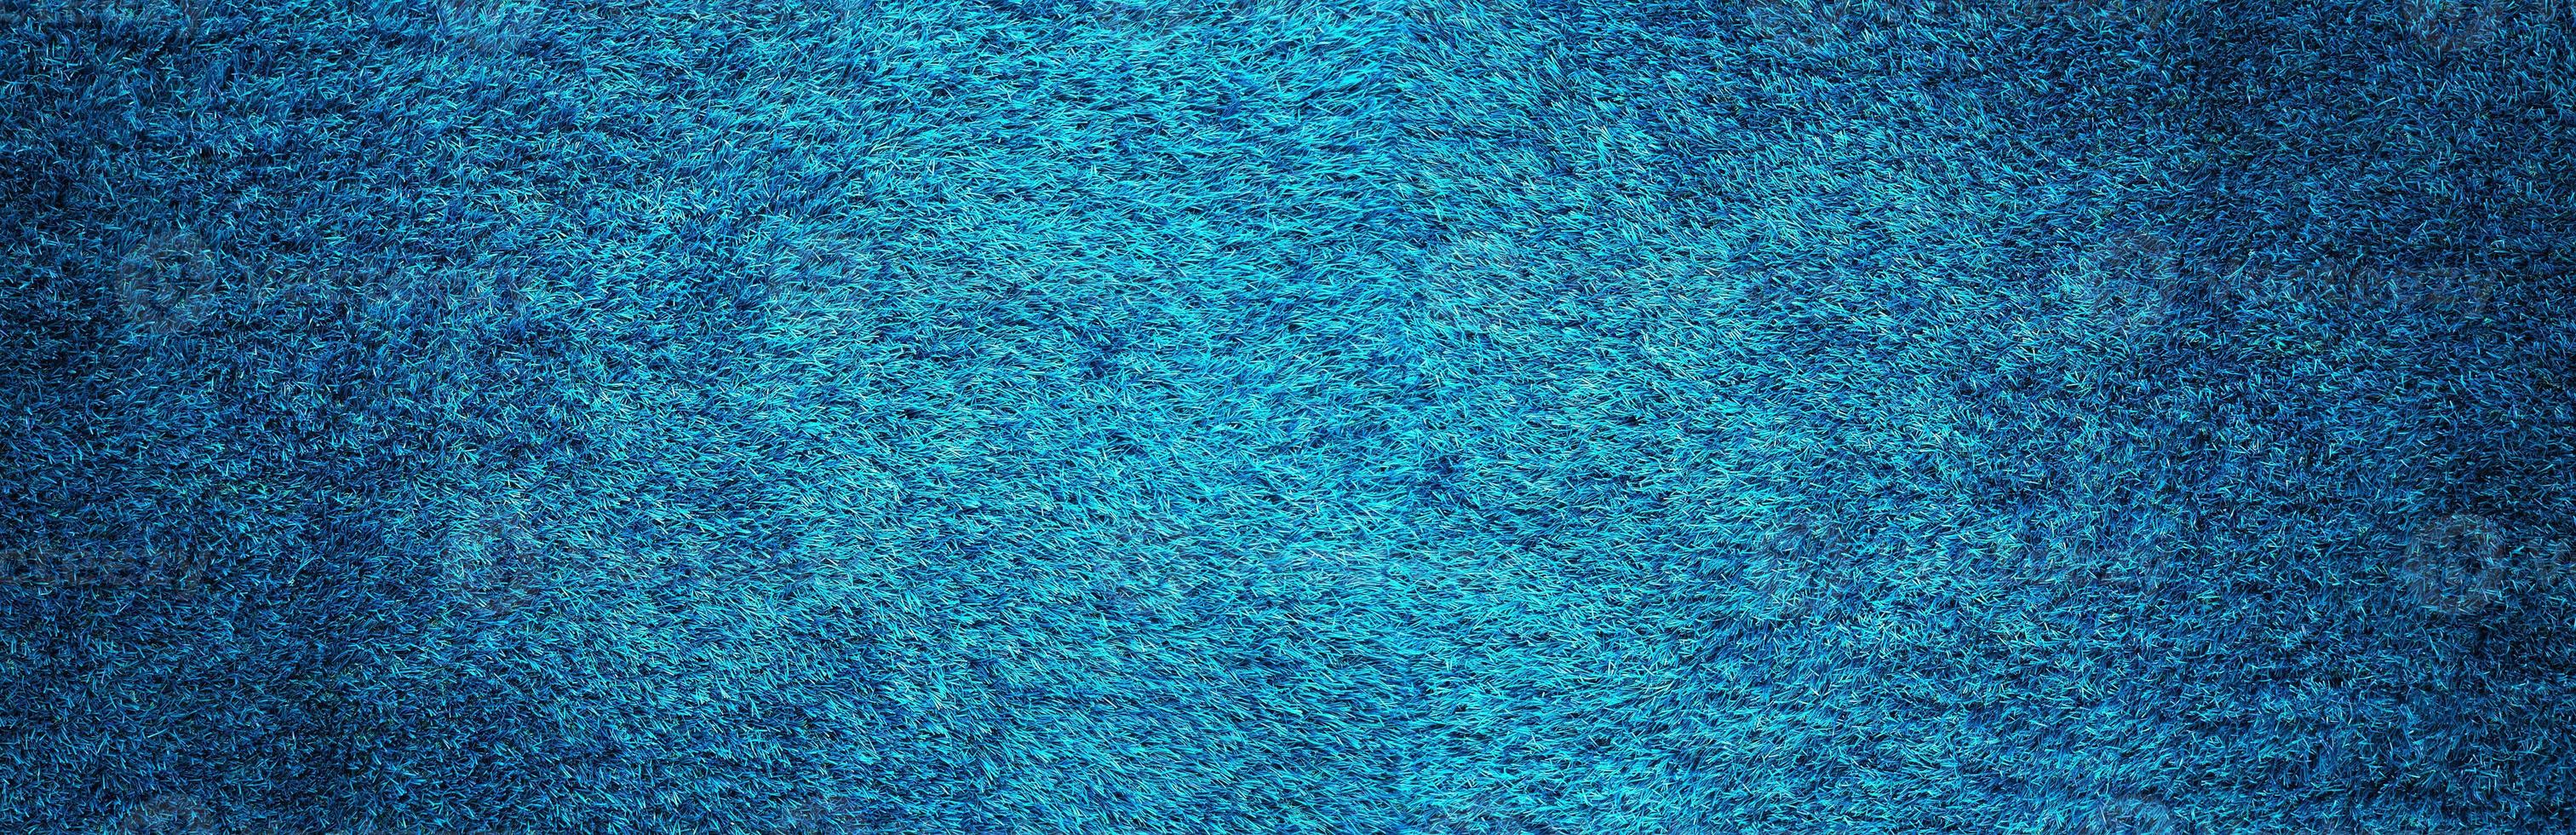 el fondo de textura de patrón de hierba azul artificial foto